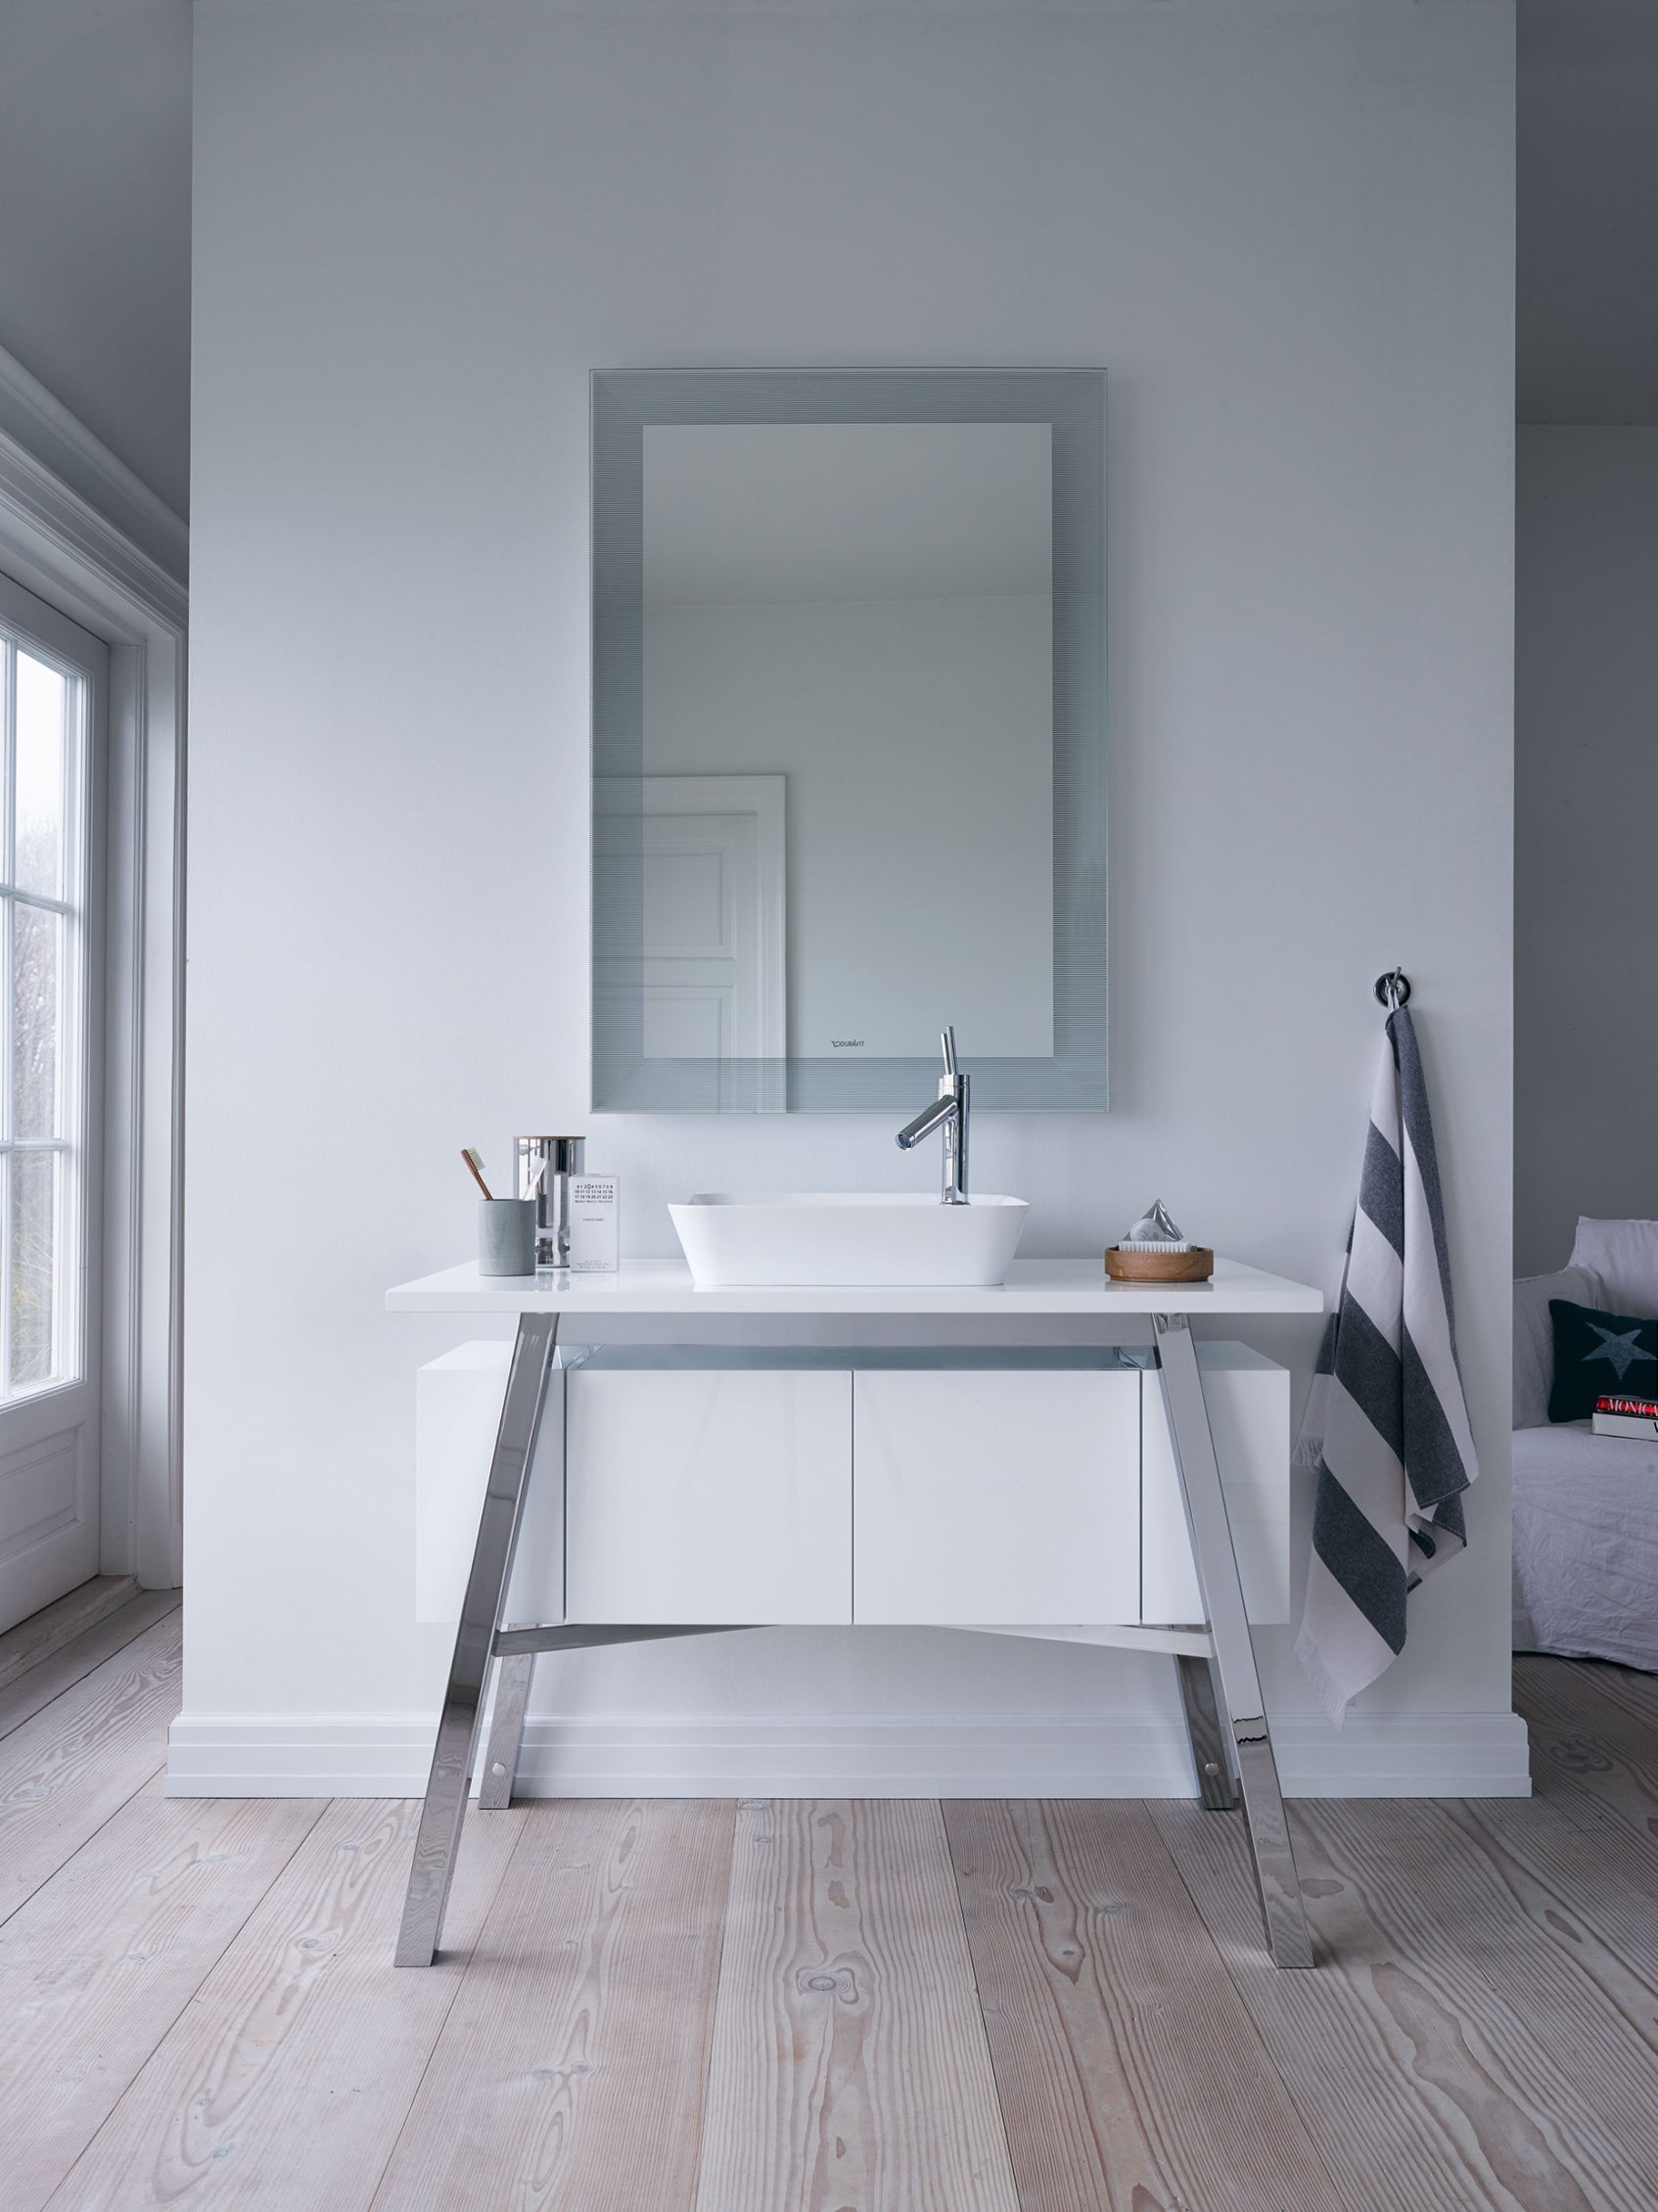 Biała łazienka – łazienka w bieli, łazienka w bieli, umywalka, meble Duravit Cape Cod – lazienkarium.pl